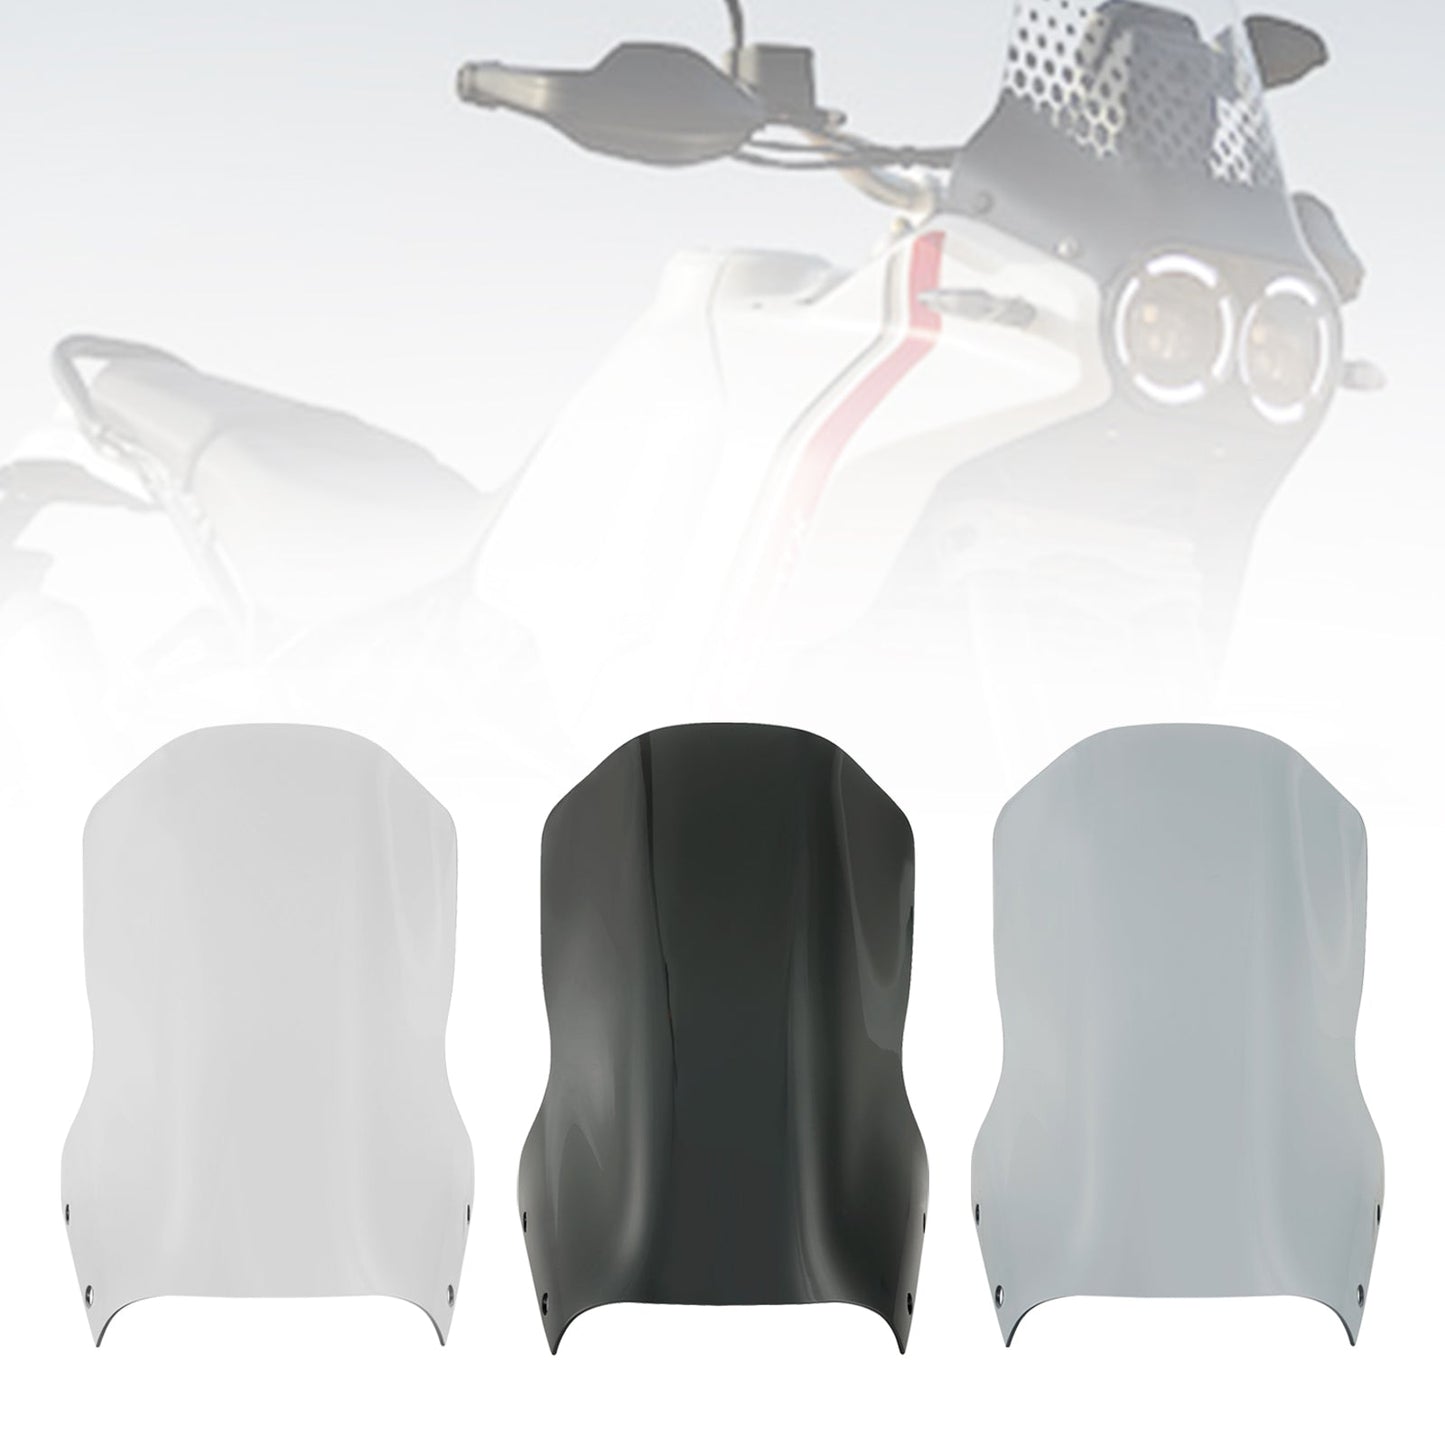 2022-2023 DUCATI DesertX Motorcycle Windshield WindScreen